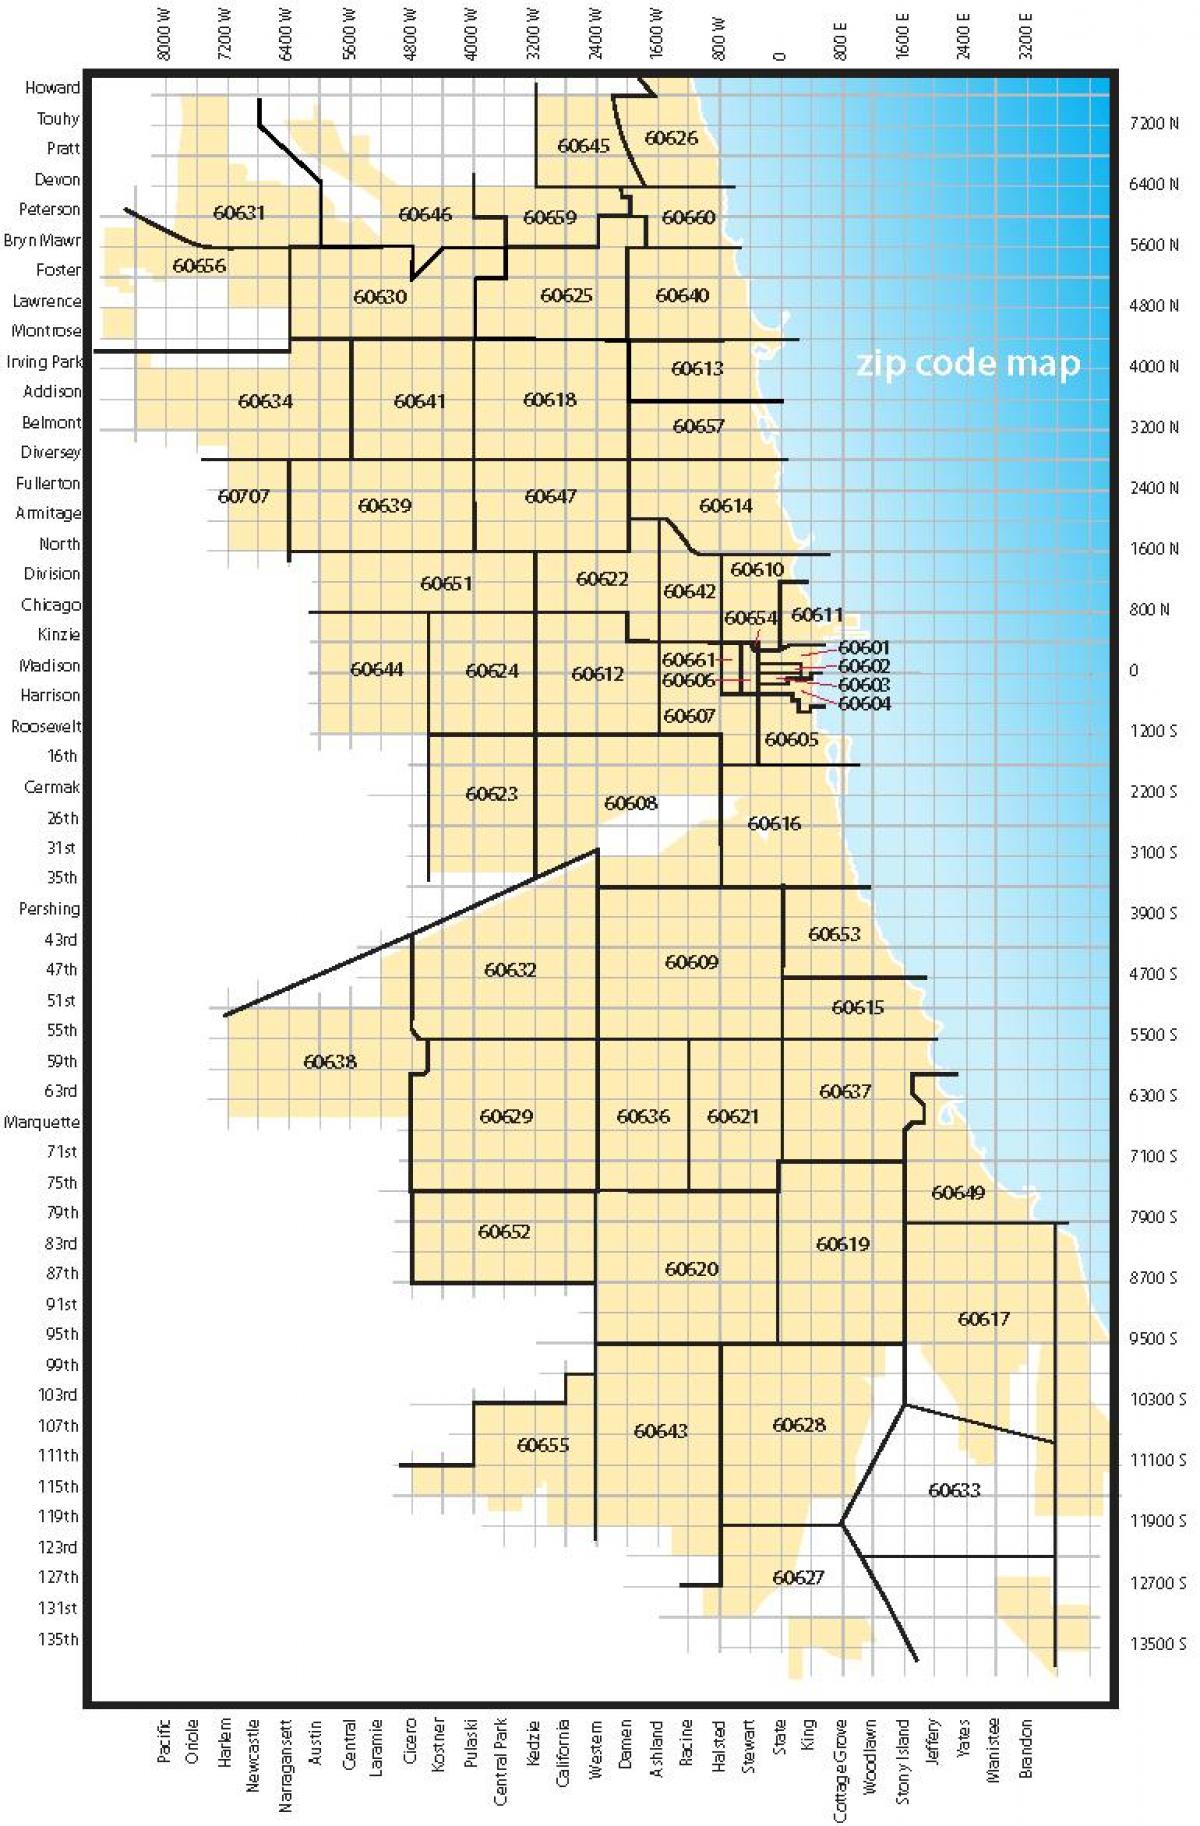 Chicago harita posta kodları